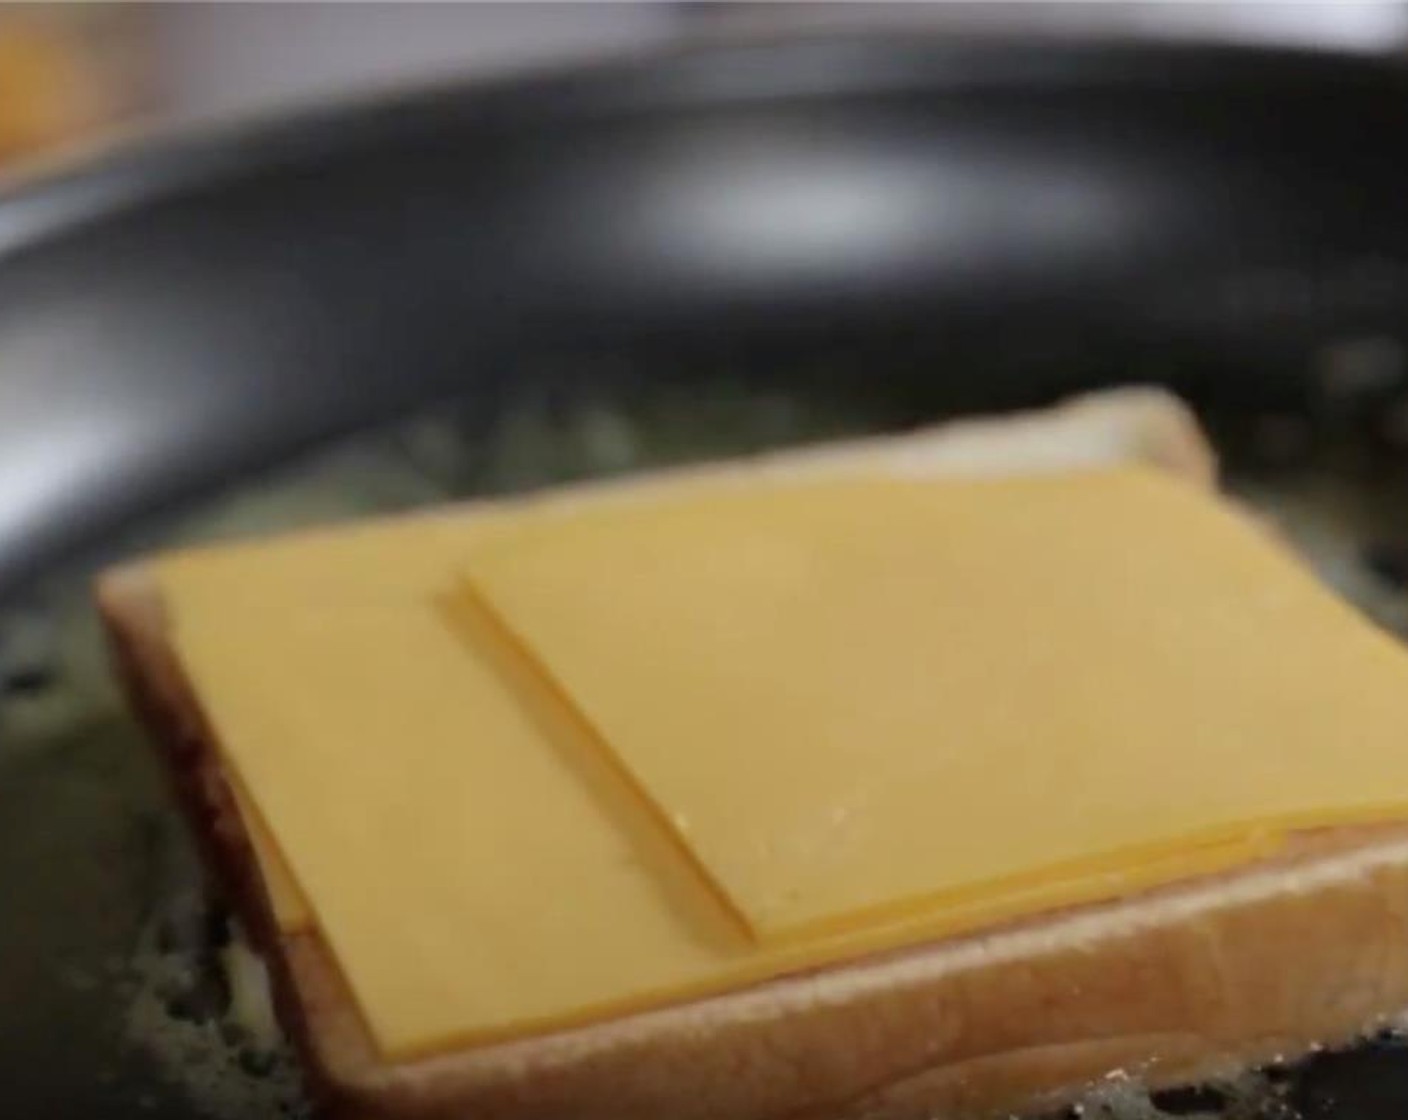 Schritt 3 Wenn die Butter geschmolzen ist, 1 Scheibe Brot mit der Mayonnaise-Seite nach unten in die Pfanne legen. Mit Käse (4 Scheiben) belegen und mit Pfeffer (wenig) würzen.